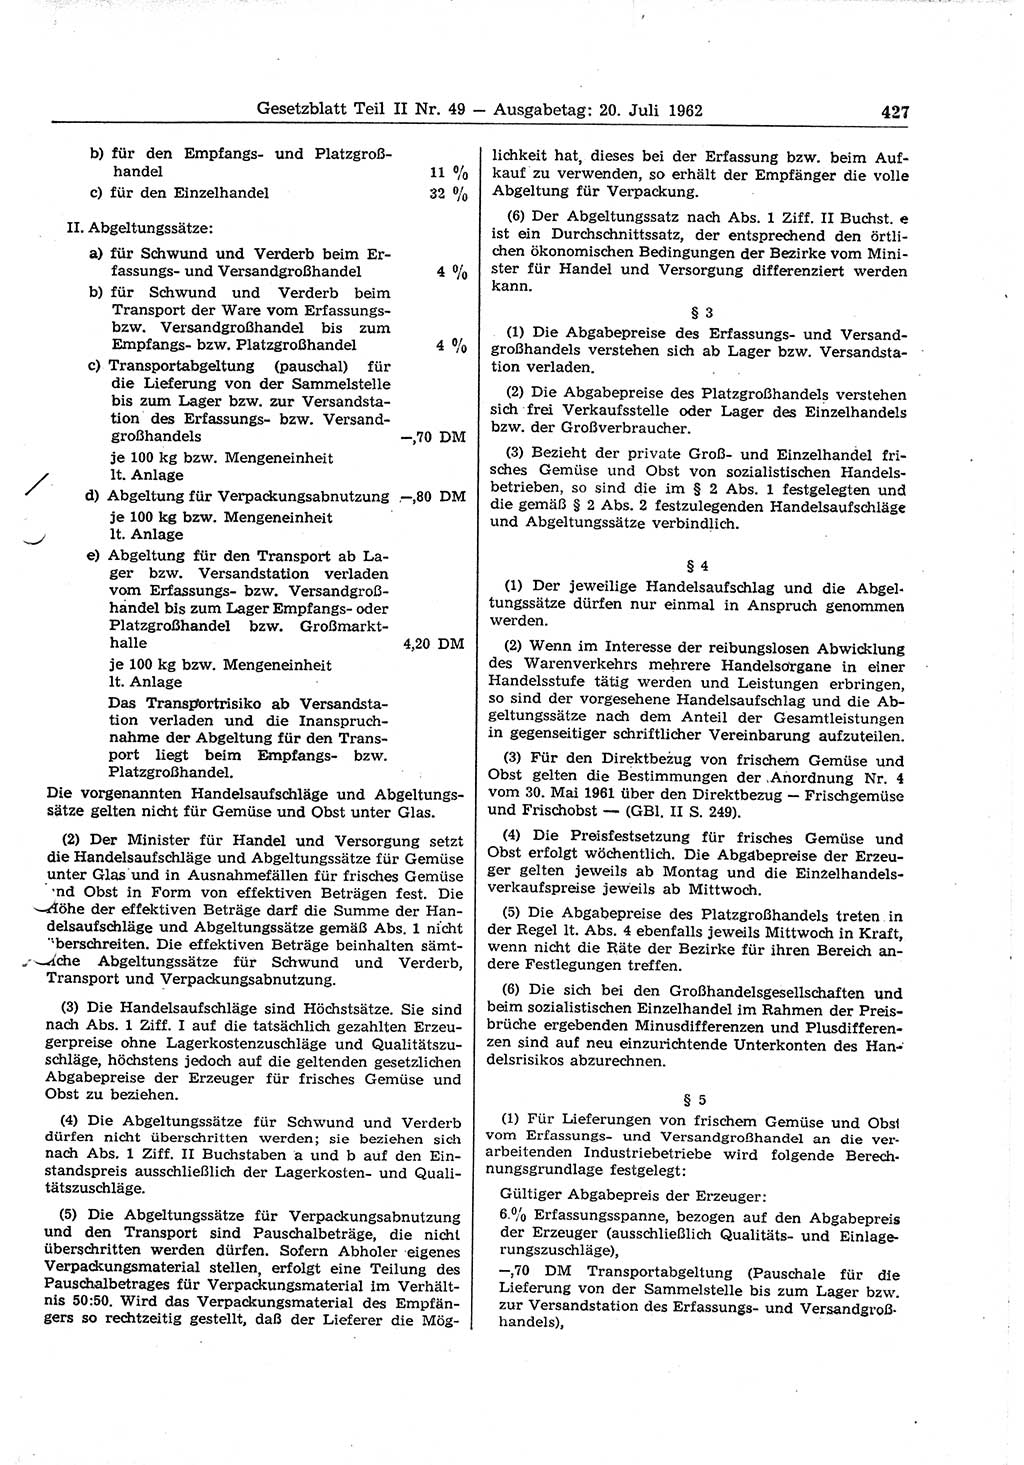 Gesetzblatt (GBl.) der Deutschen Demokratischen Republik (DDR) Teil ⅠⅠ 1962, Seite 427 (GBl. DDR ⅠⅠ 1962, S. 427)